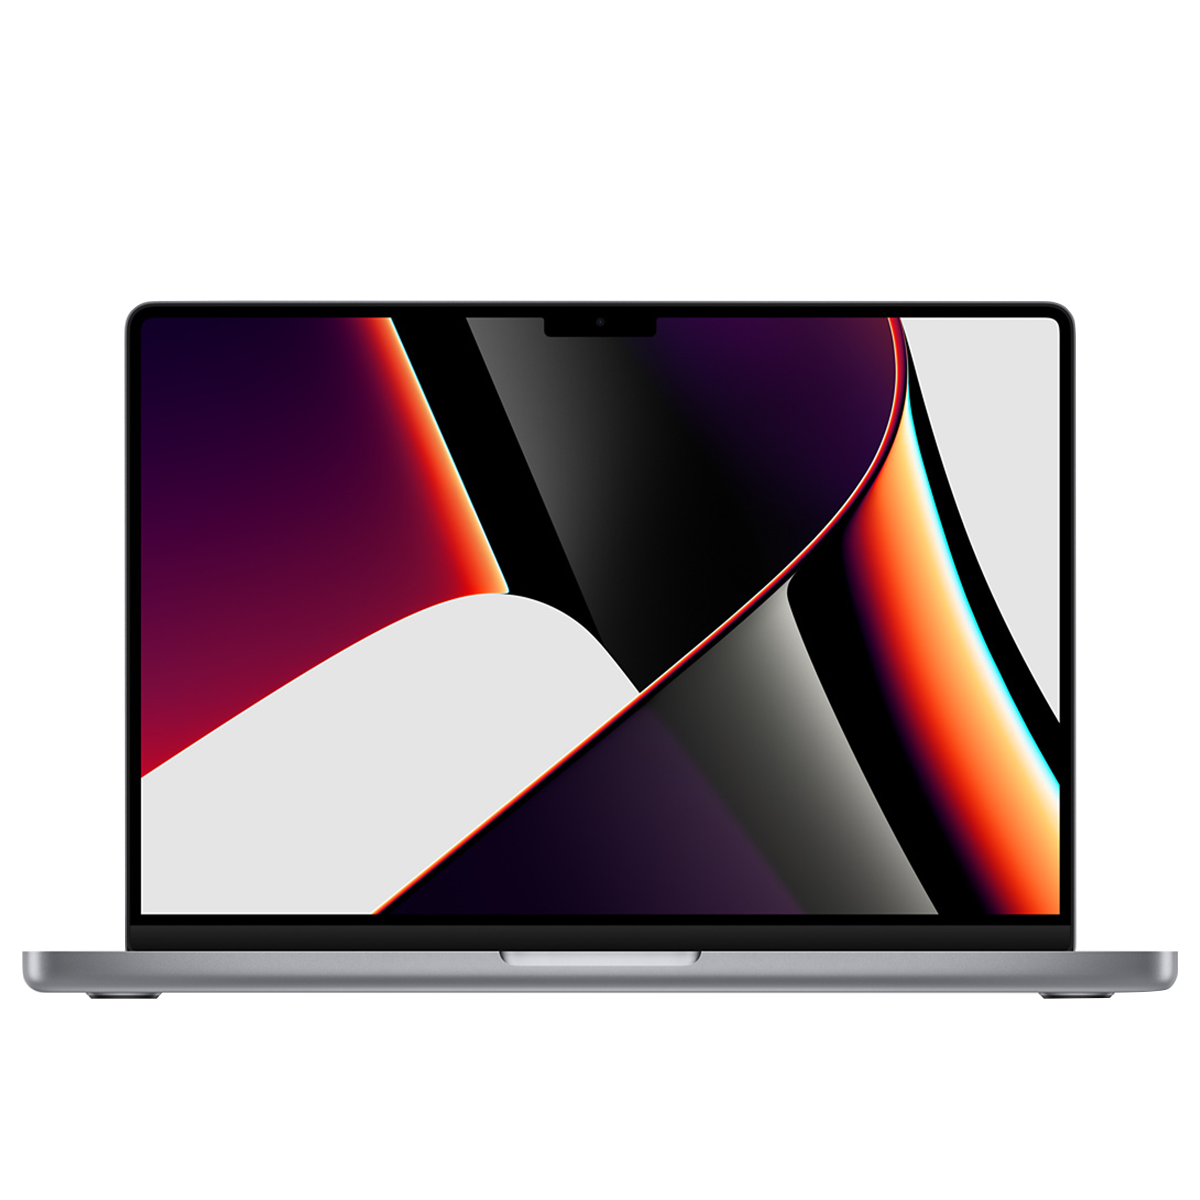  Macbook M1 Pro 14-inch, 8-core CPU, 14-core GPU, 16-core Neural Engine 